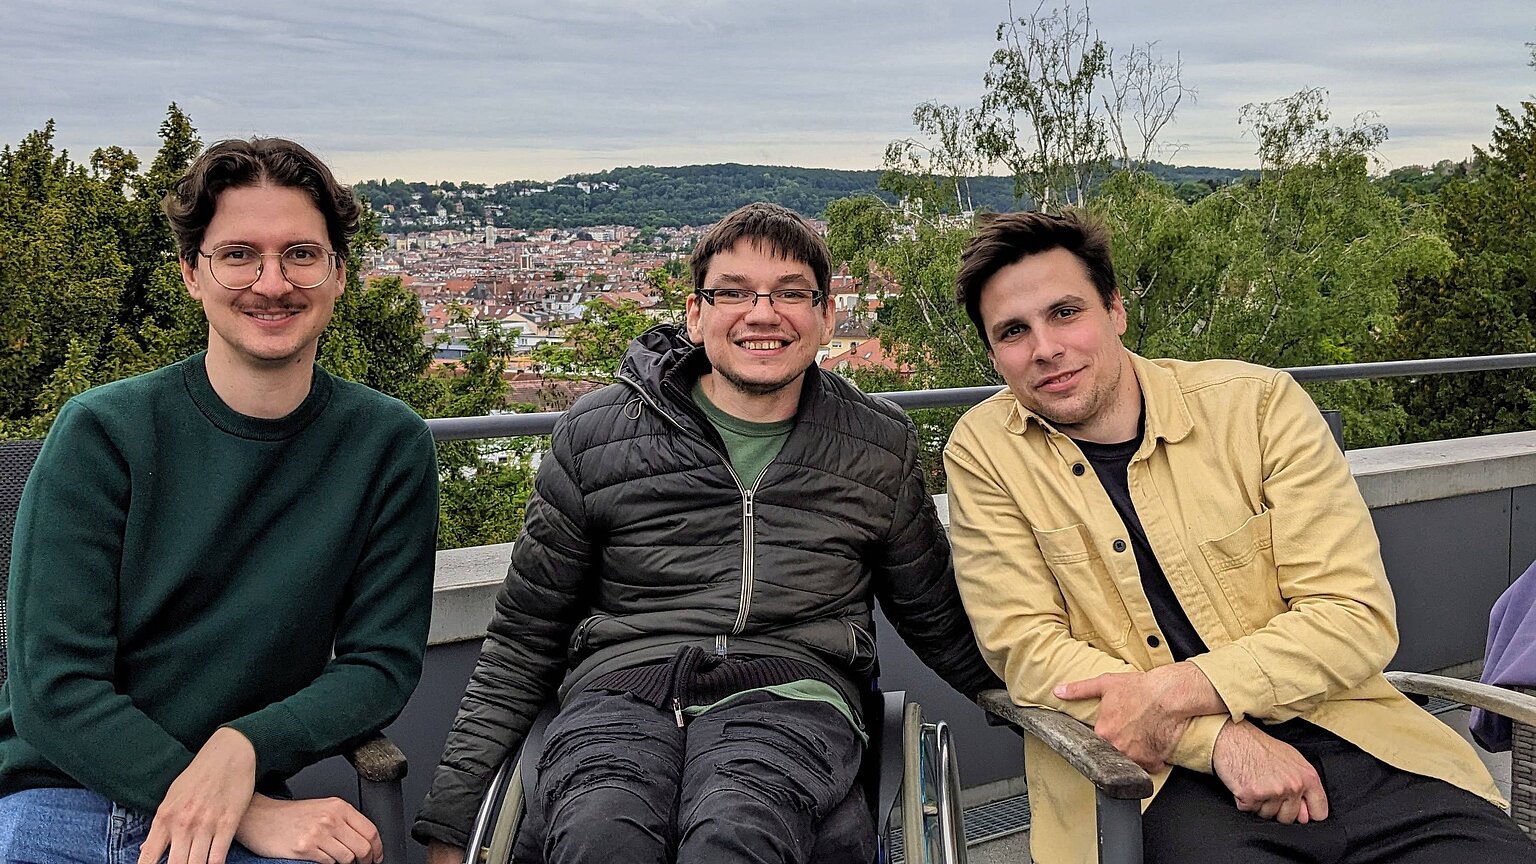  – Andreas, Fabian und Emanuel vom neuen Engagement-Team des DJV Baden-Württemberg